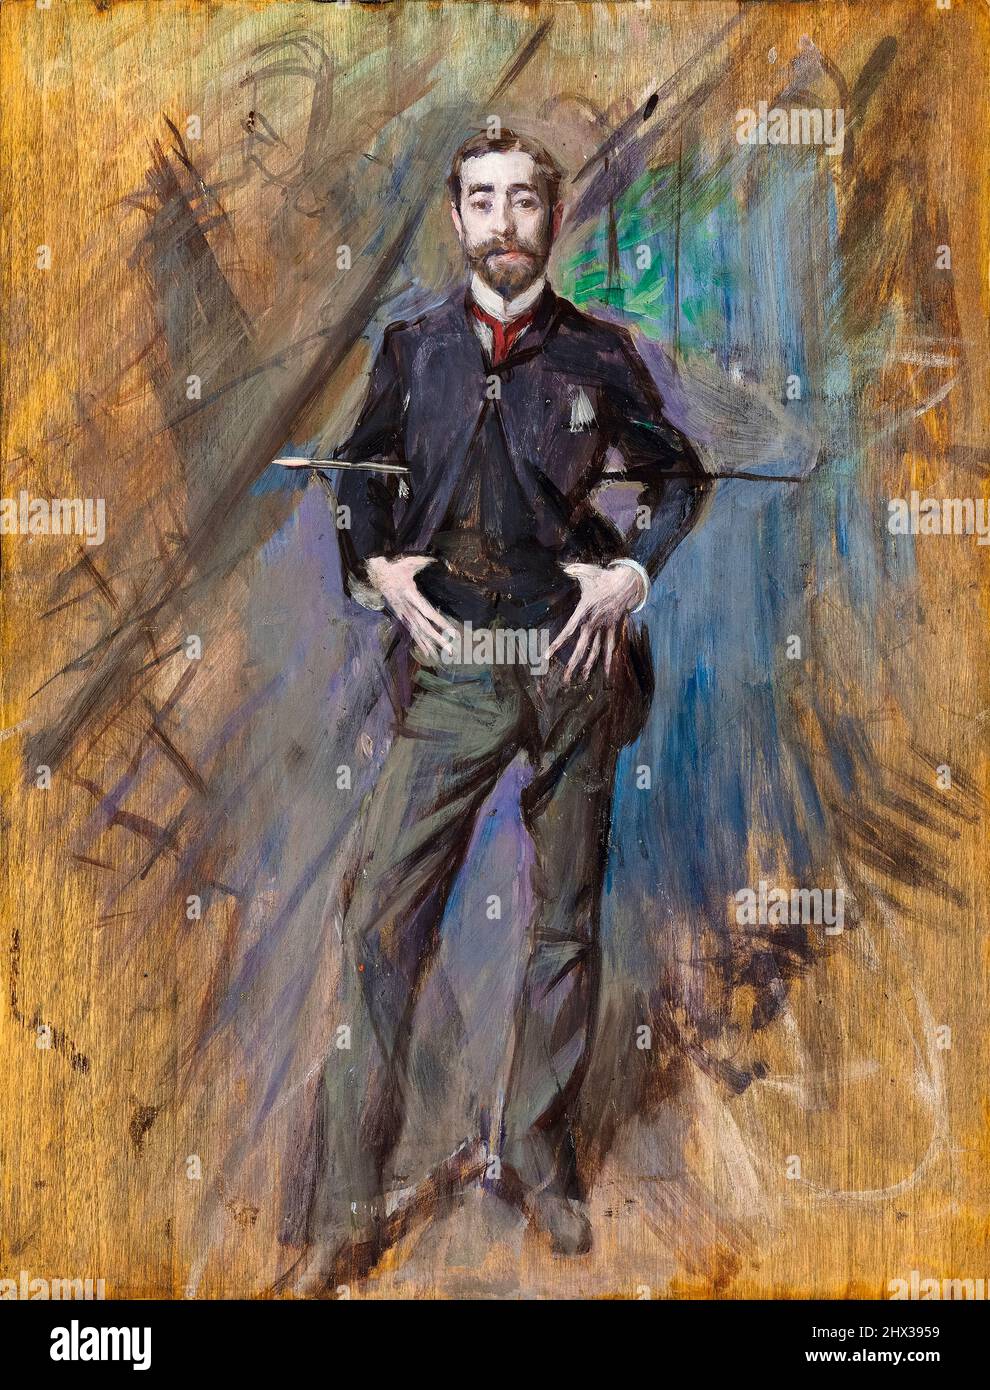 John Singer Sargent (1856-1925), artiste américain connu pour son portrait de l'époque édouardienne, huile sur tableau de portrait de Giovanni Boldini, 1890 Banque D'Images